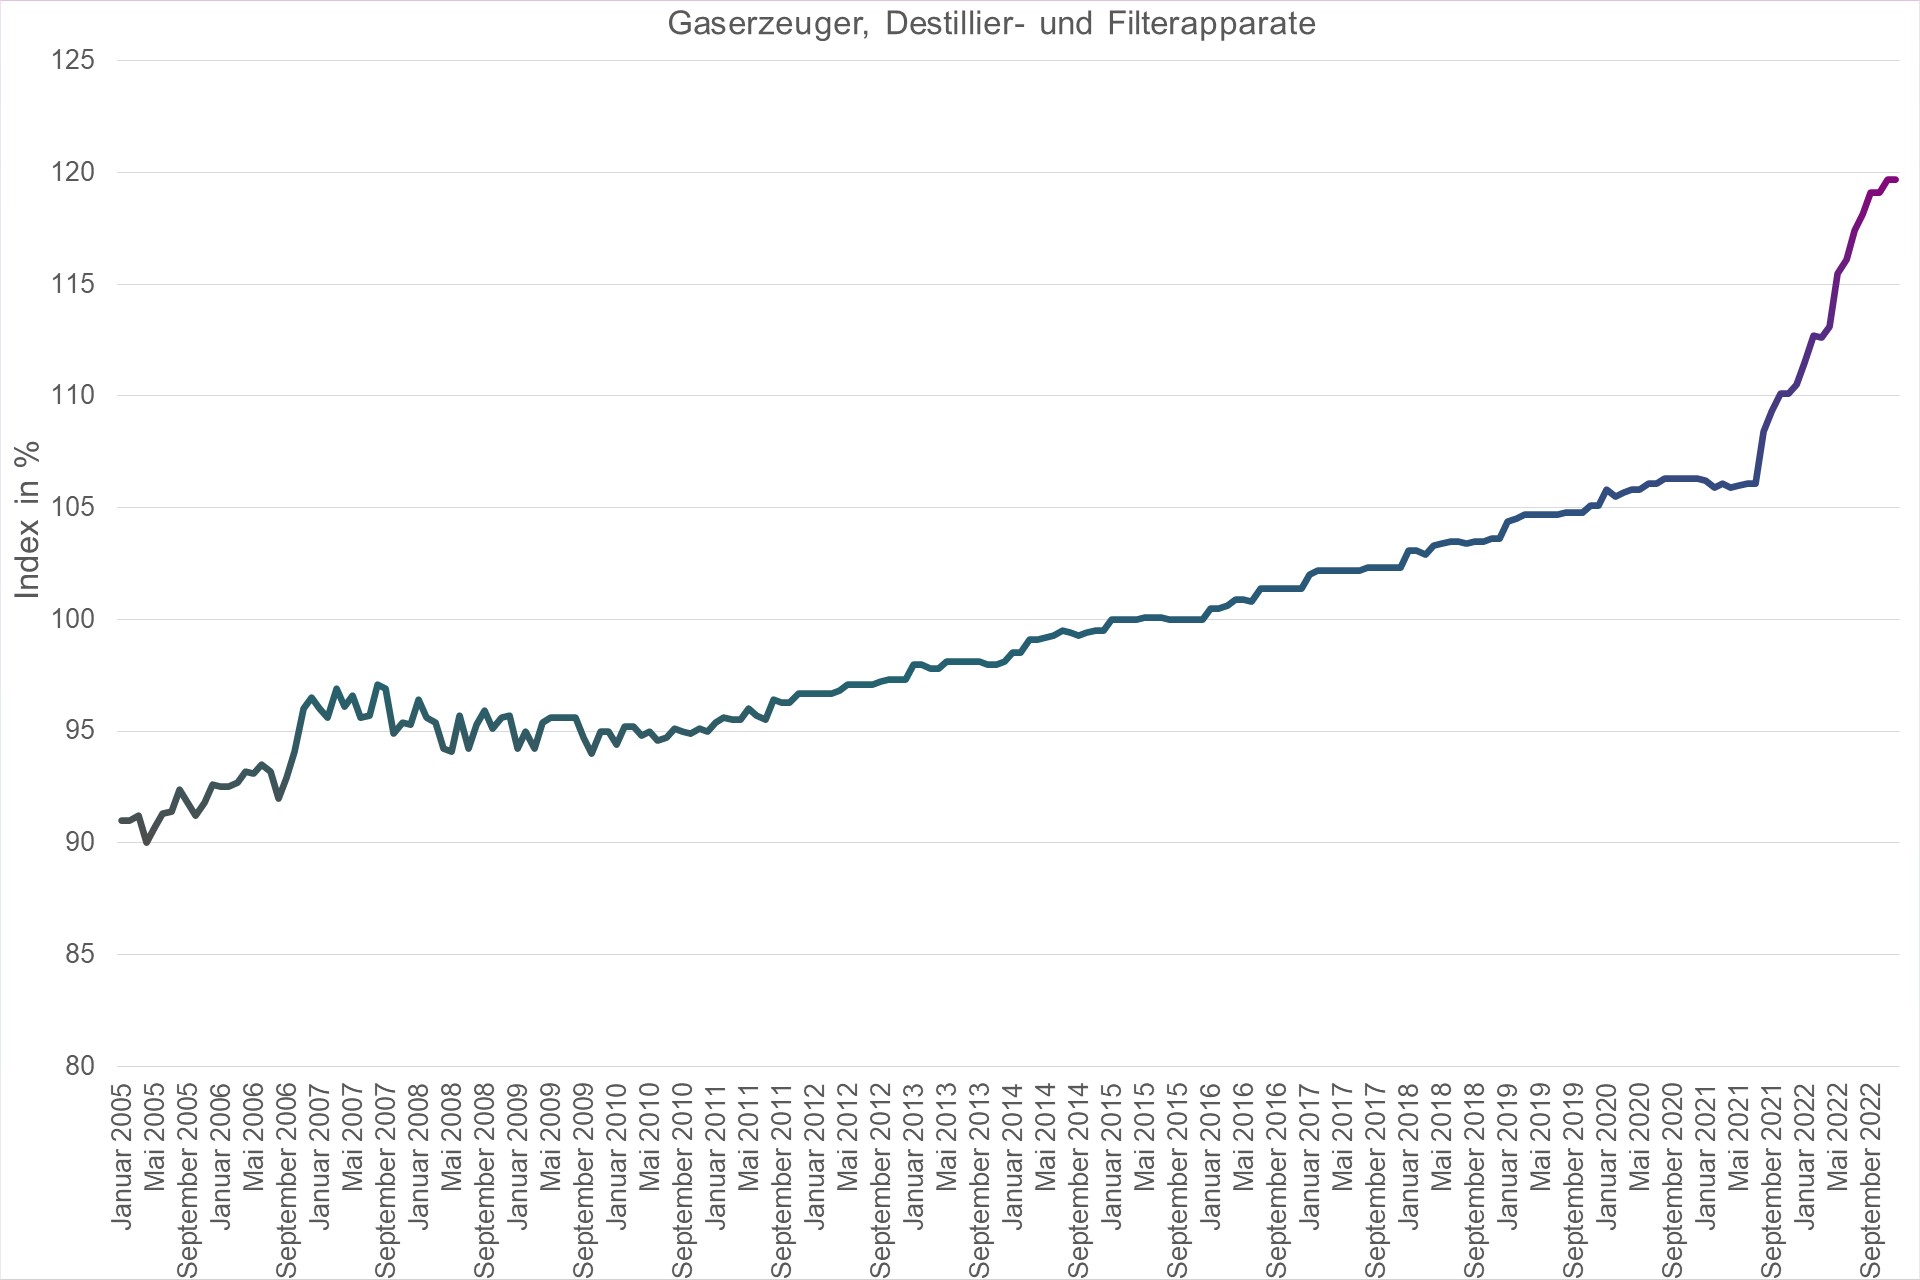 Grafik Preisindex Gaserzeuger, Destillier- und Filterapparate